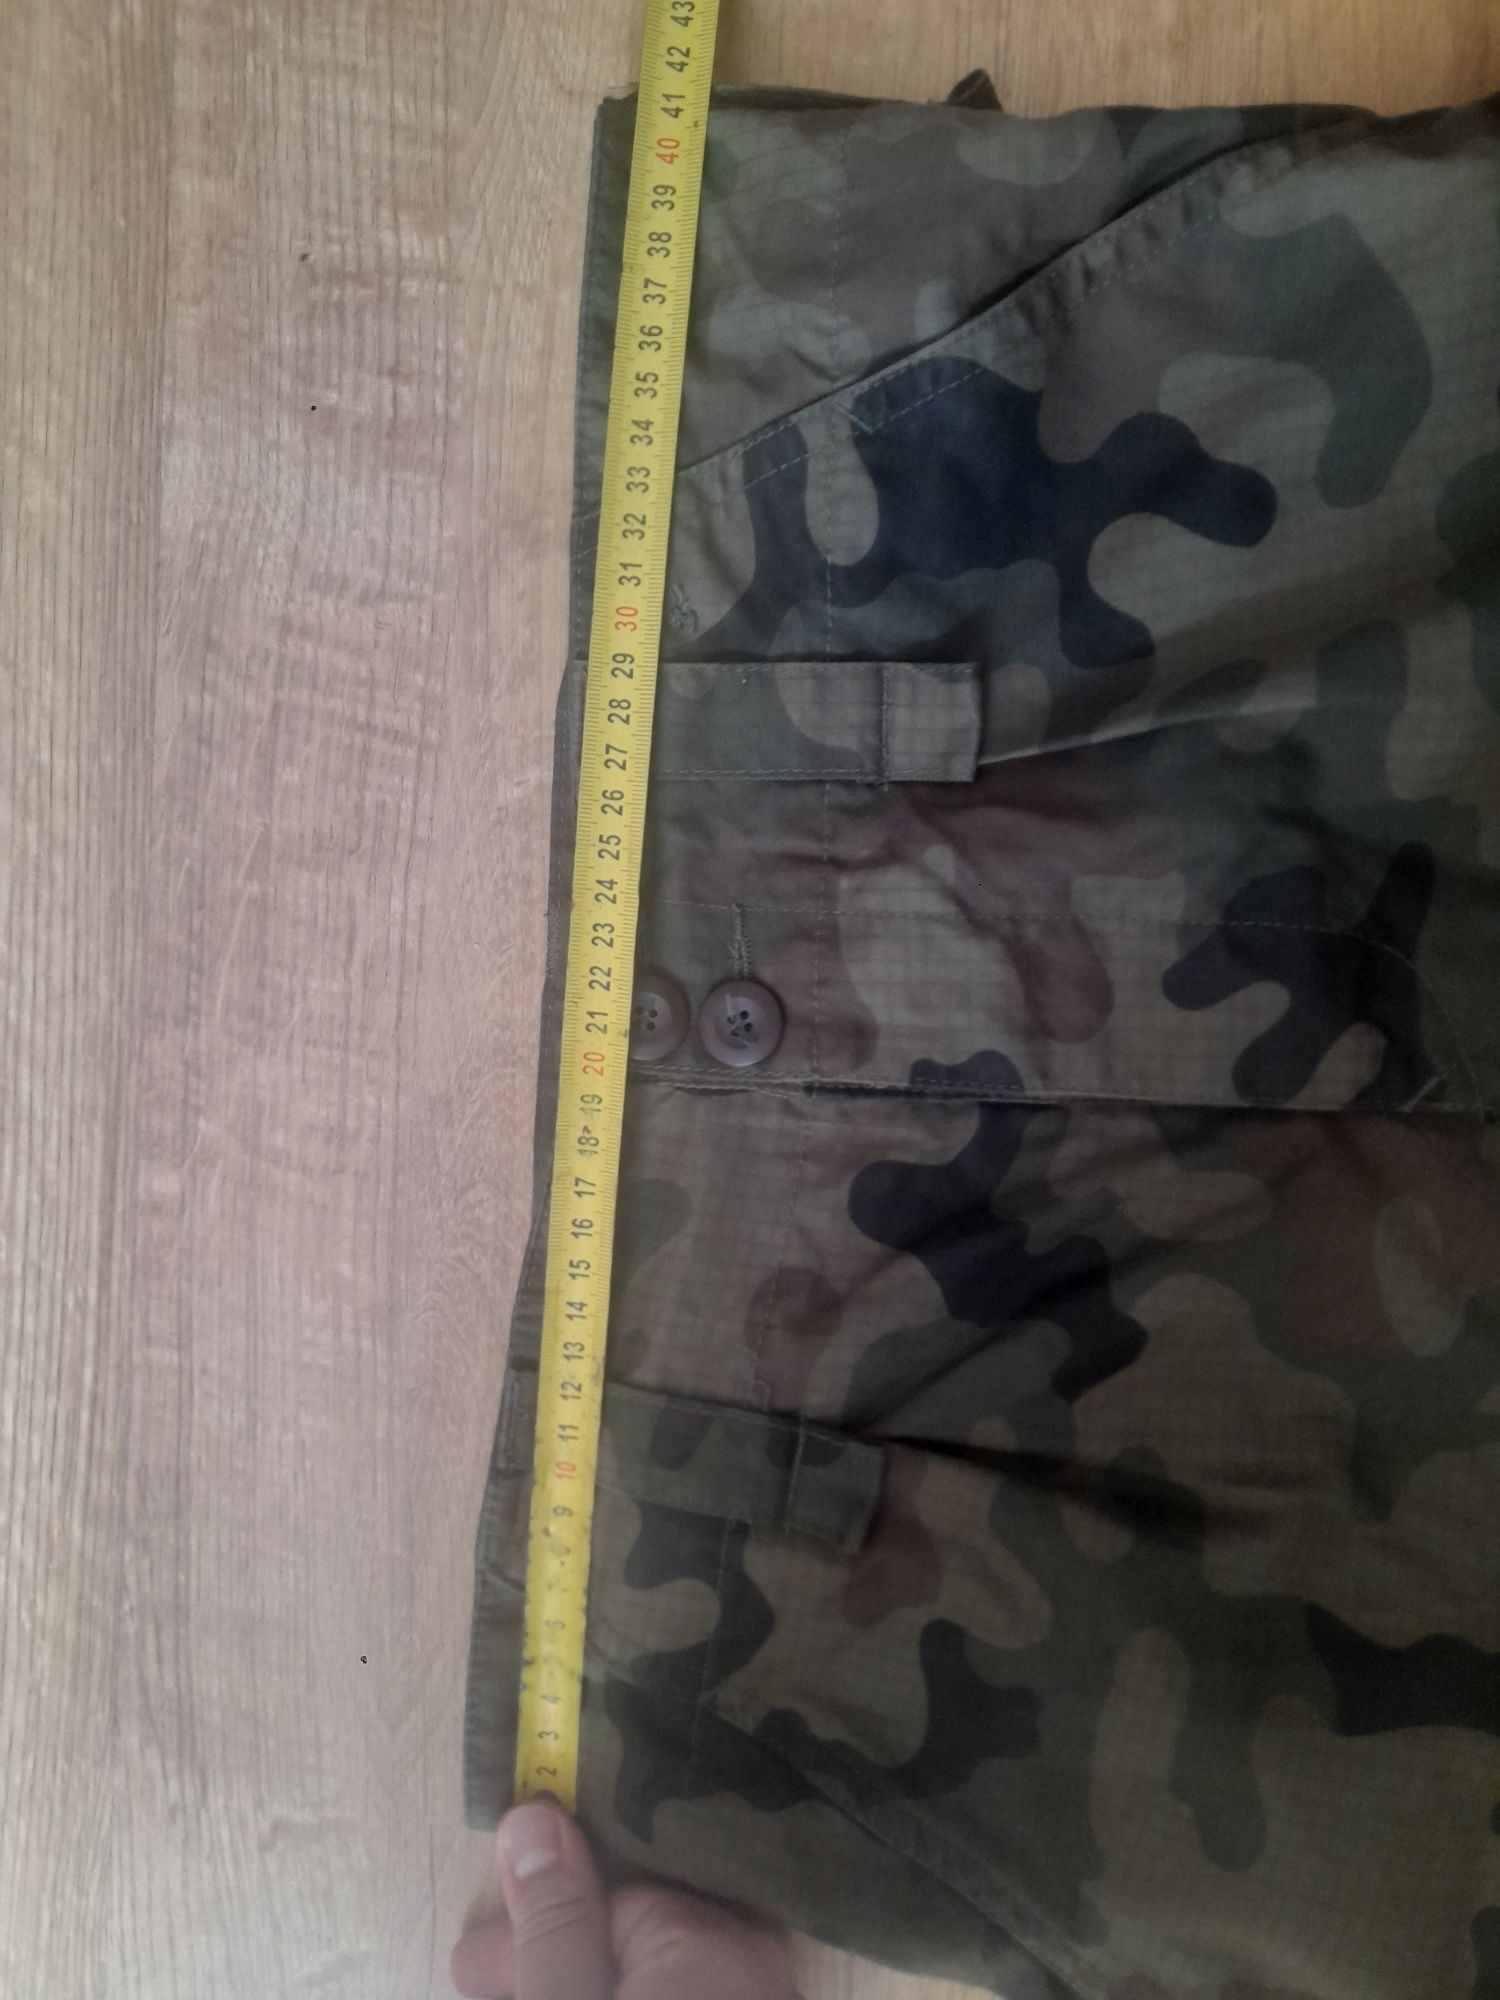 Spodnie do munduru wzór 2010 mały rozmiar